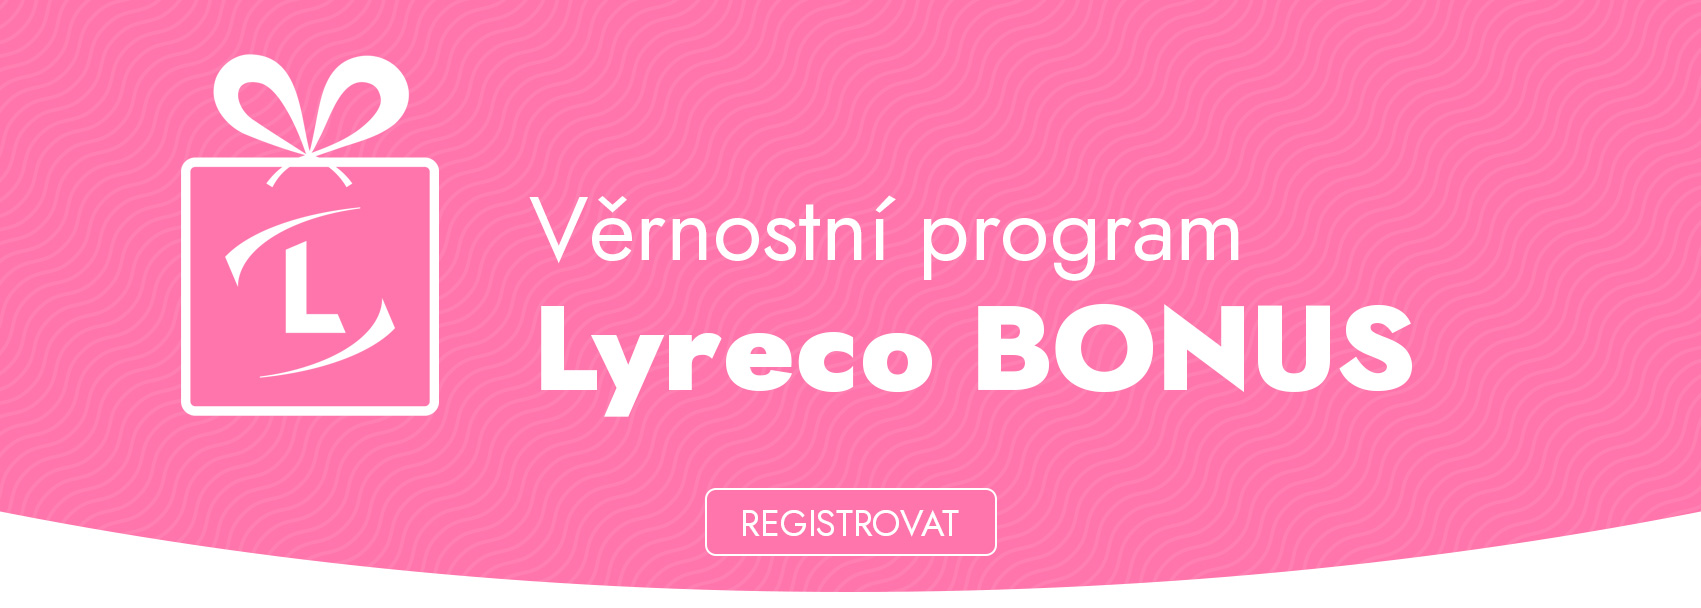 Lyreco BONUS program